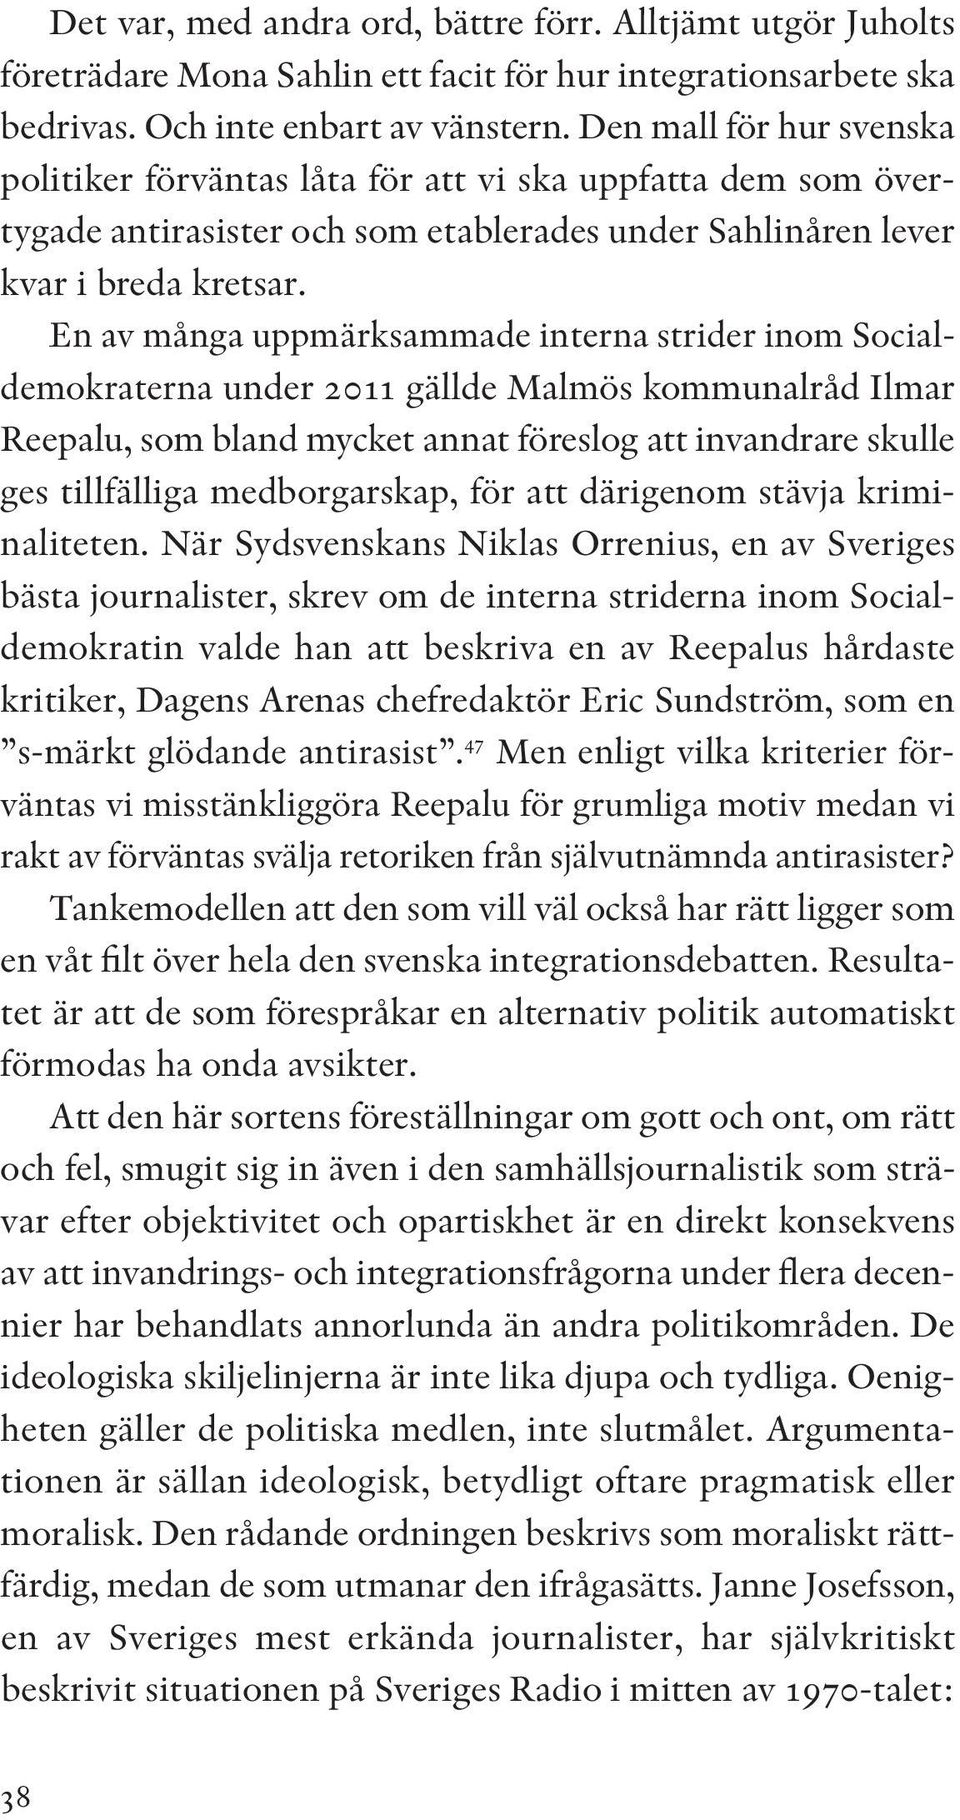 En av många uppmärksammade interna strider inom Socialdemokraterna under 2011 gällde Malmös kommunalråd Ilmar Reepalu, som bland mycket annat föreslog att invandrare skulle ges tillfälliga